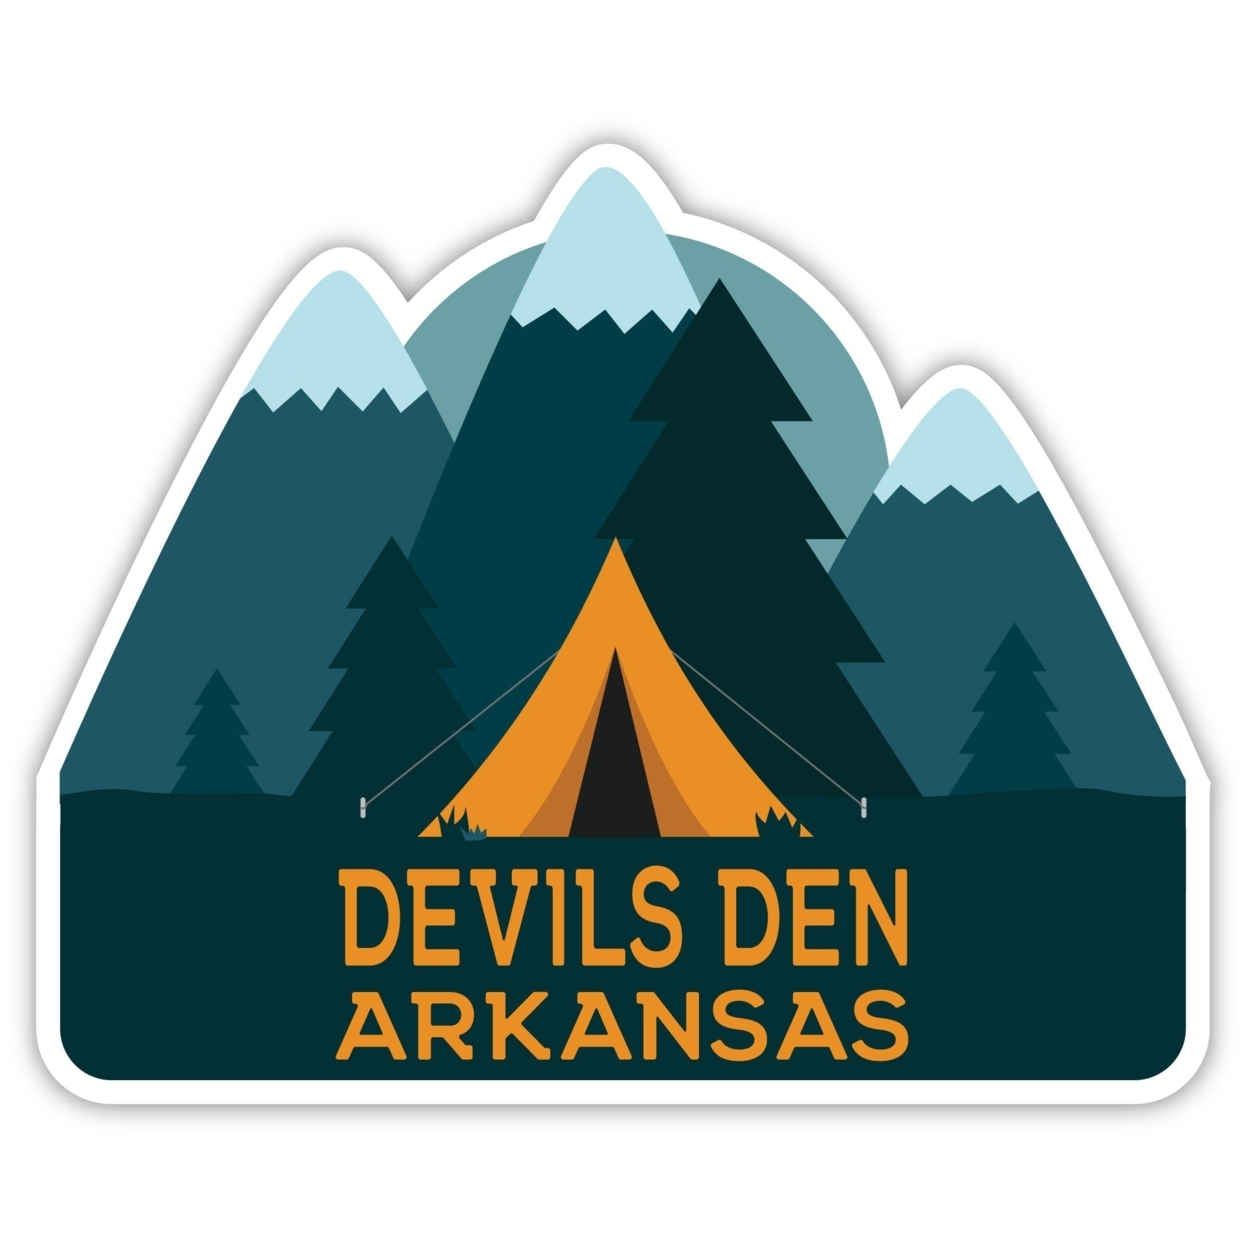 Devils Den Arkansas Souvenir Decorative Stickers (Choose Theme And Size) - 4-Pack, 4-Inch, Tent